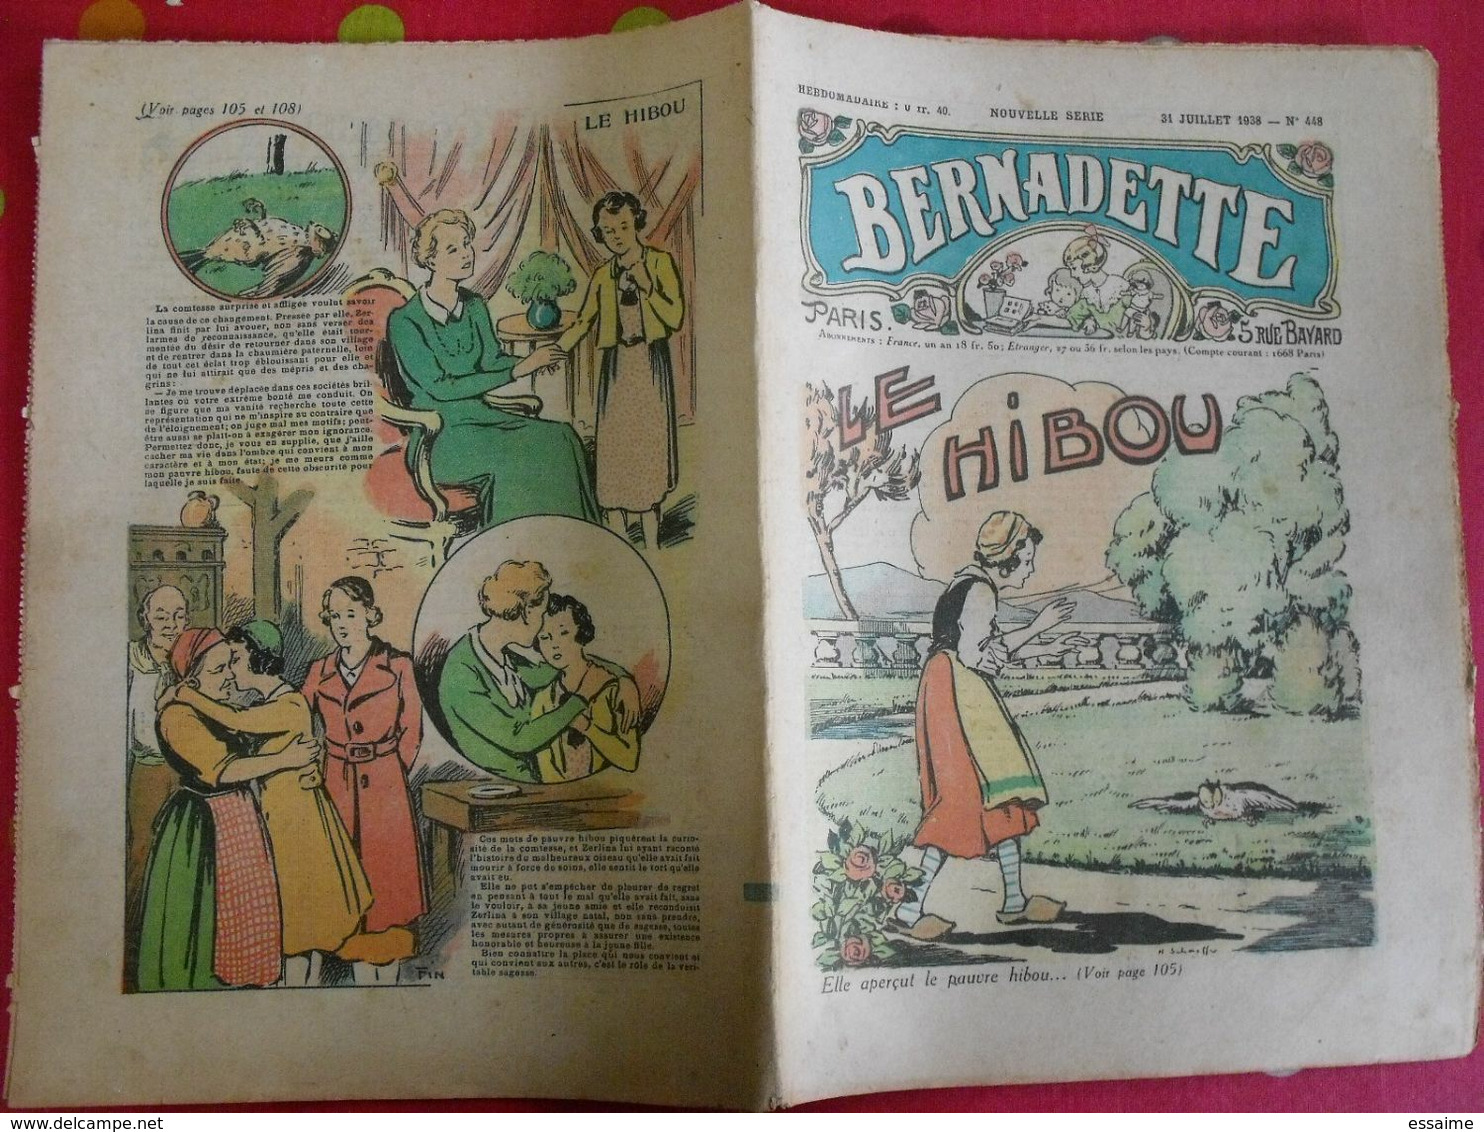 lot de 10 revues BD "Bernadette" de 1938. A redécouvrir. hébrard jobbé duval